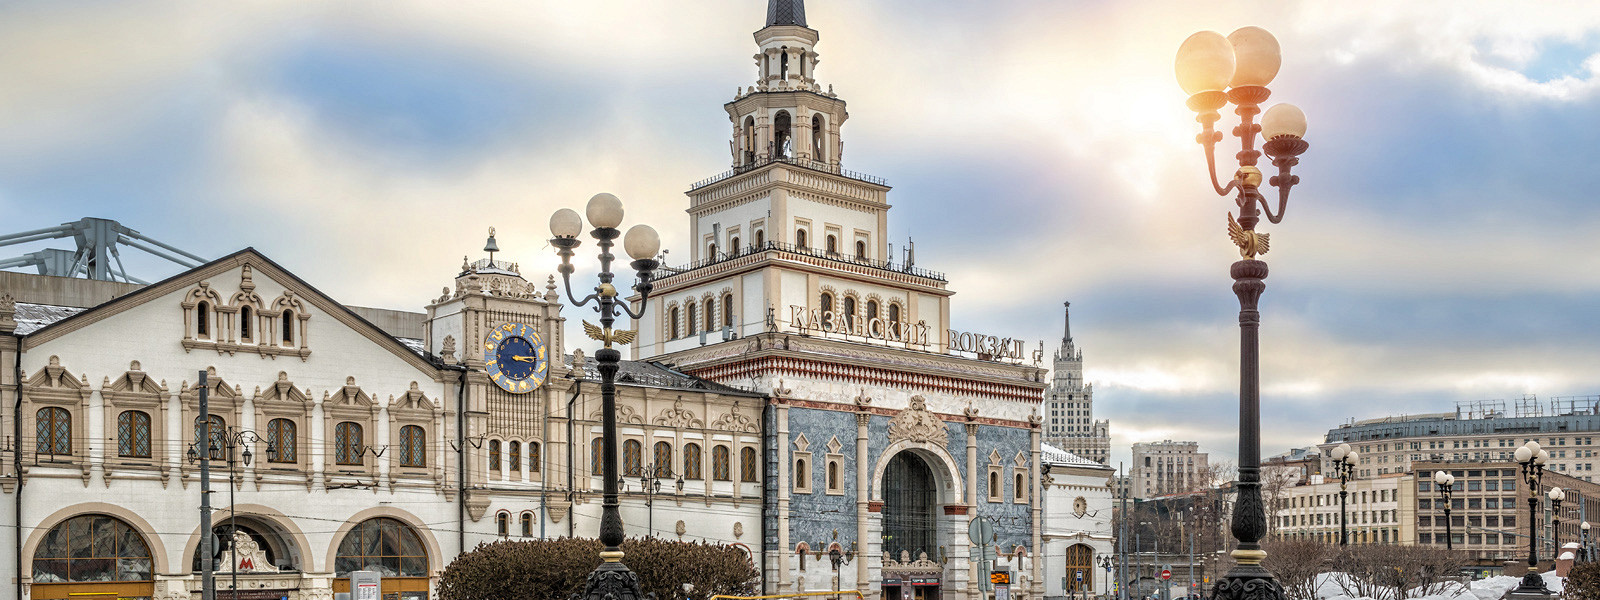 Журнал/Железнодорожный восторг: самые красивые вокзалы России